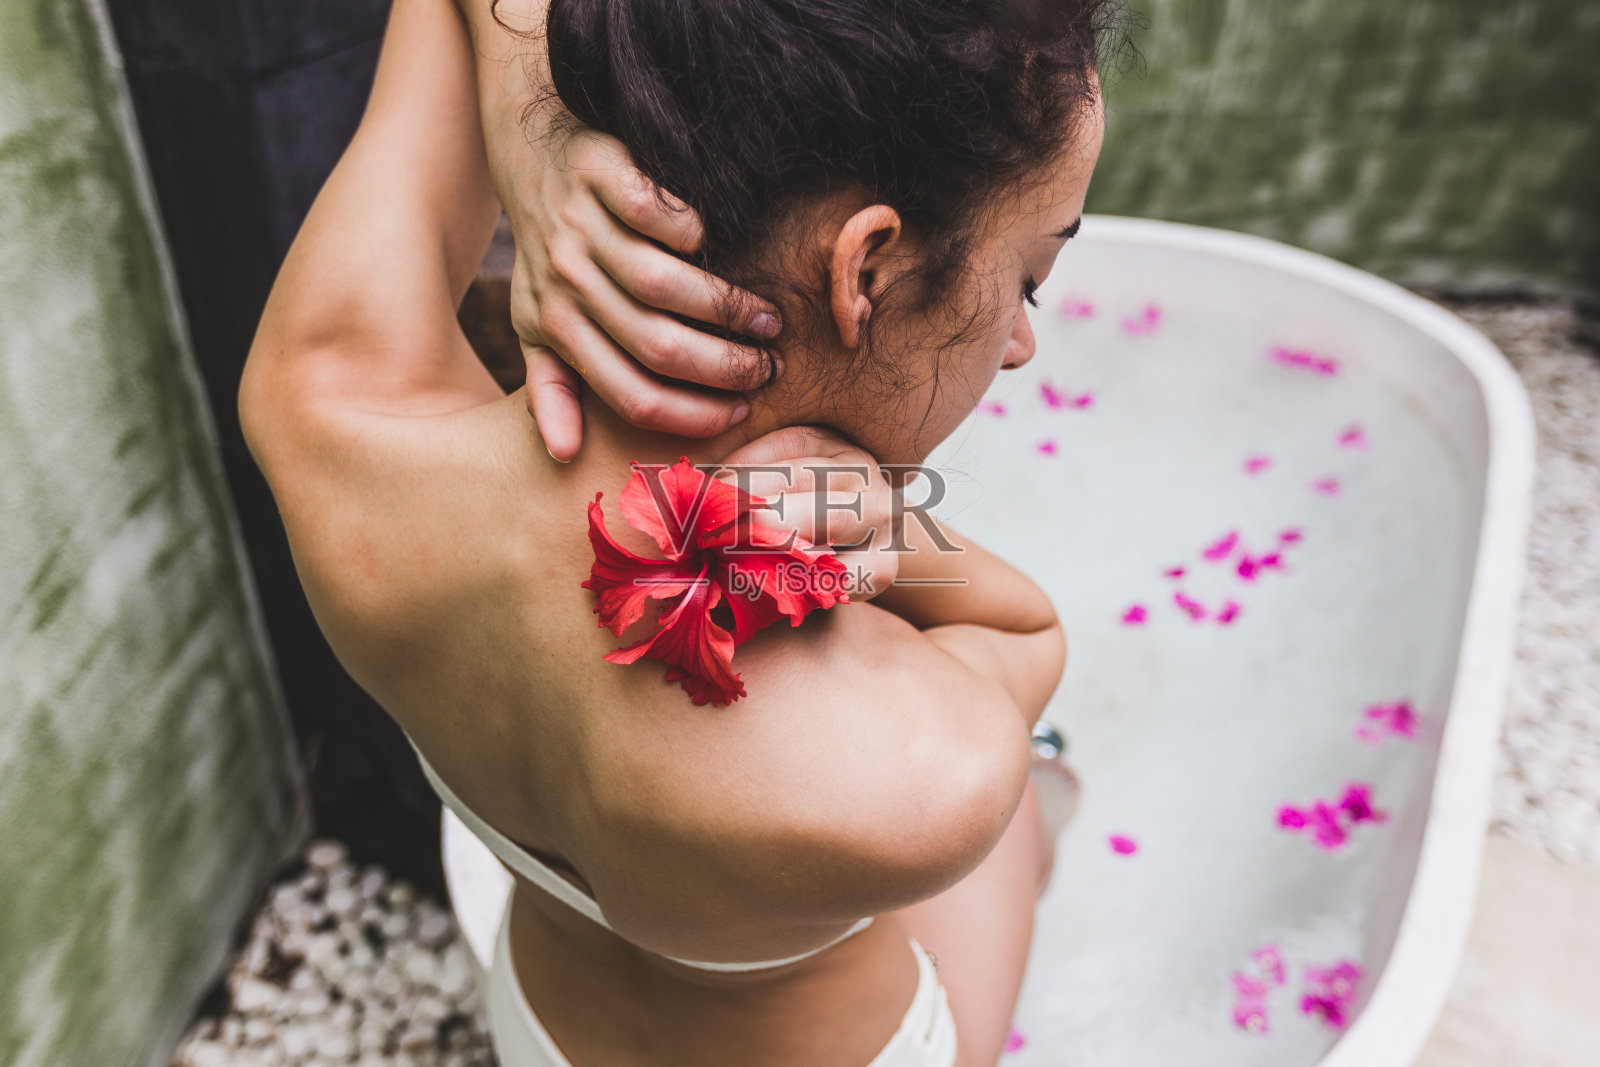 女人放松在圆形户外沐浴热带鲜花，有机皮肤护理，豪华水疗酒店，生活方式照片照片摄影图片